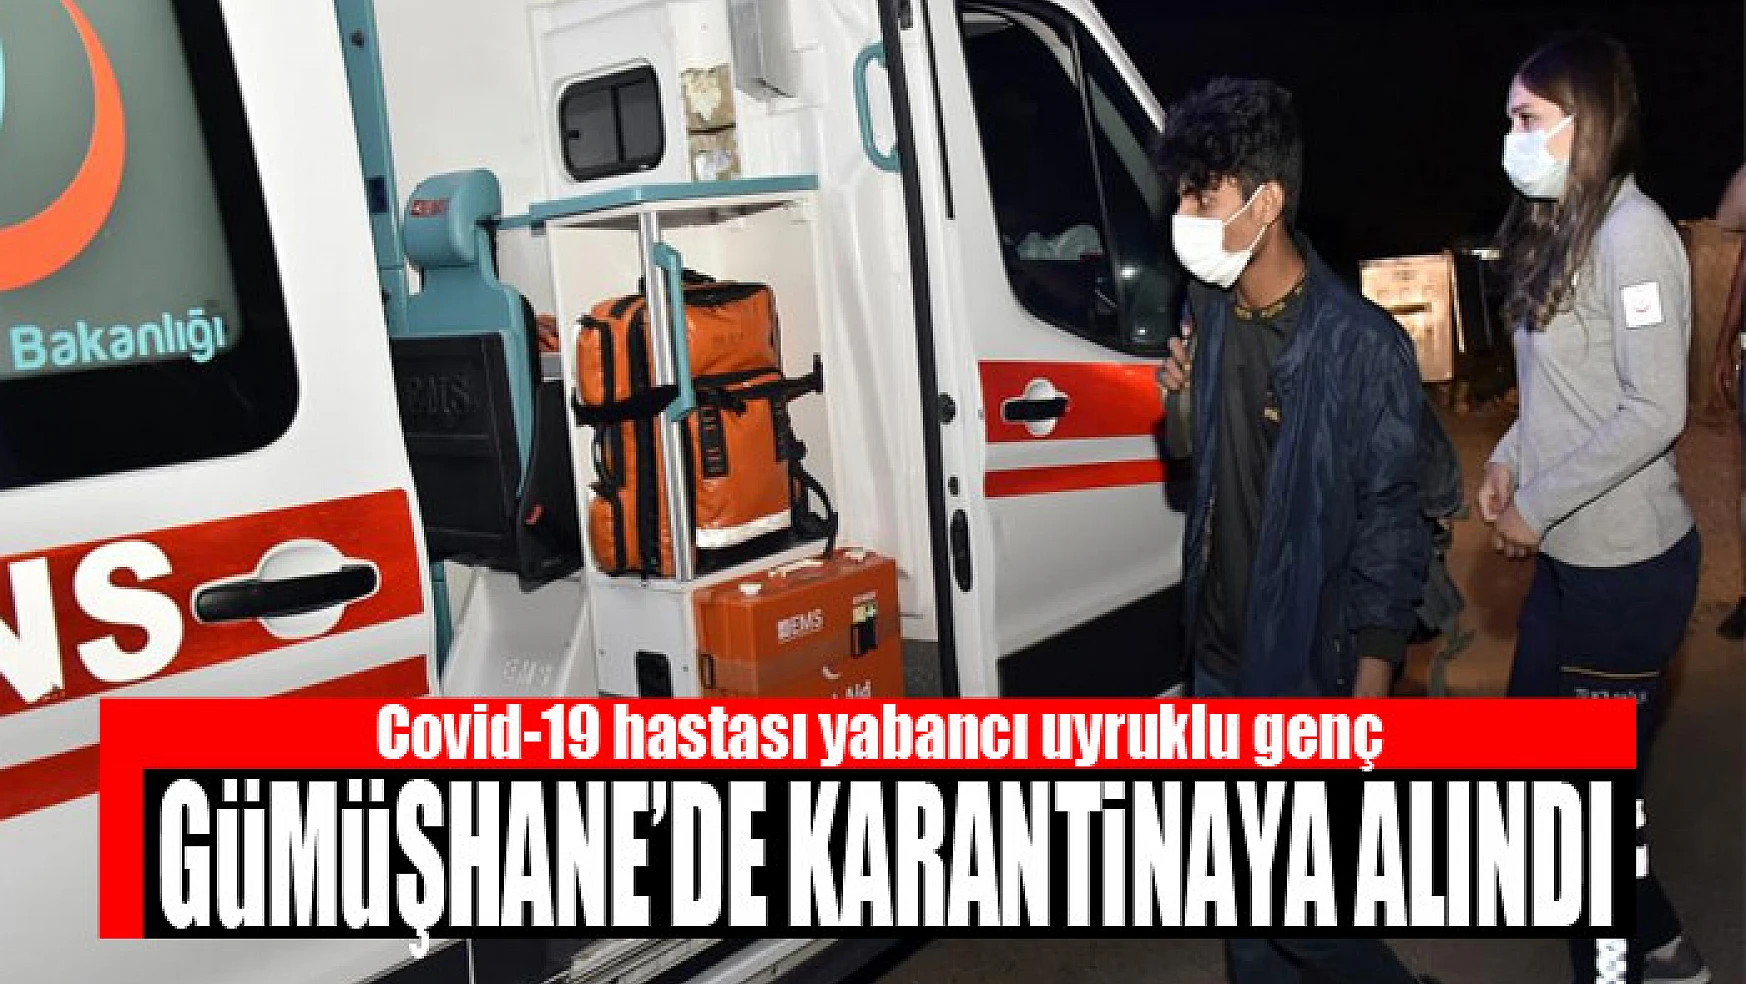 Covid-19 hastası yabancı uyruklu genç Gümüşhane'de karantinaya alındı